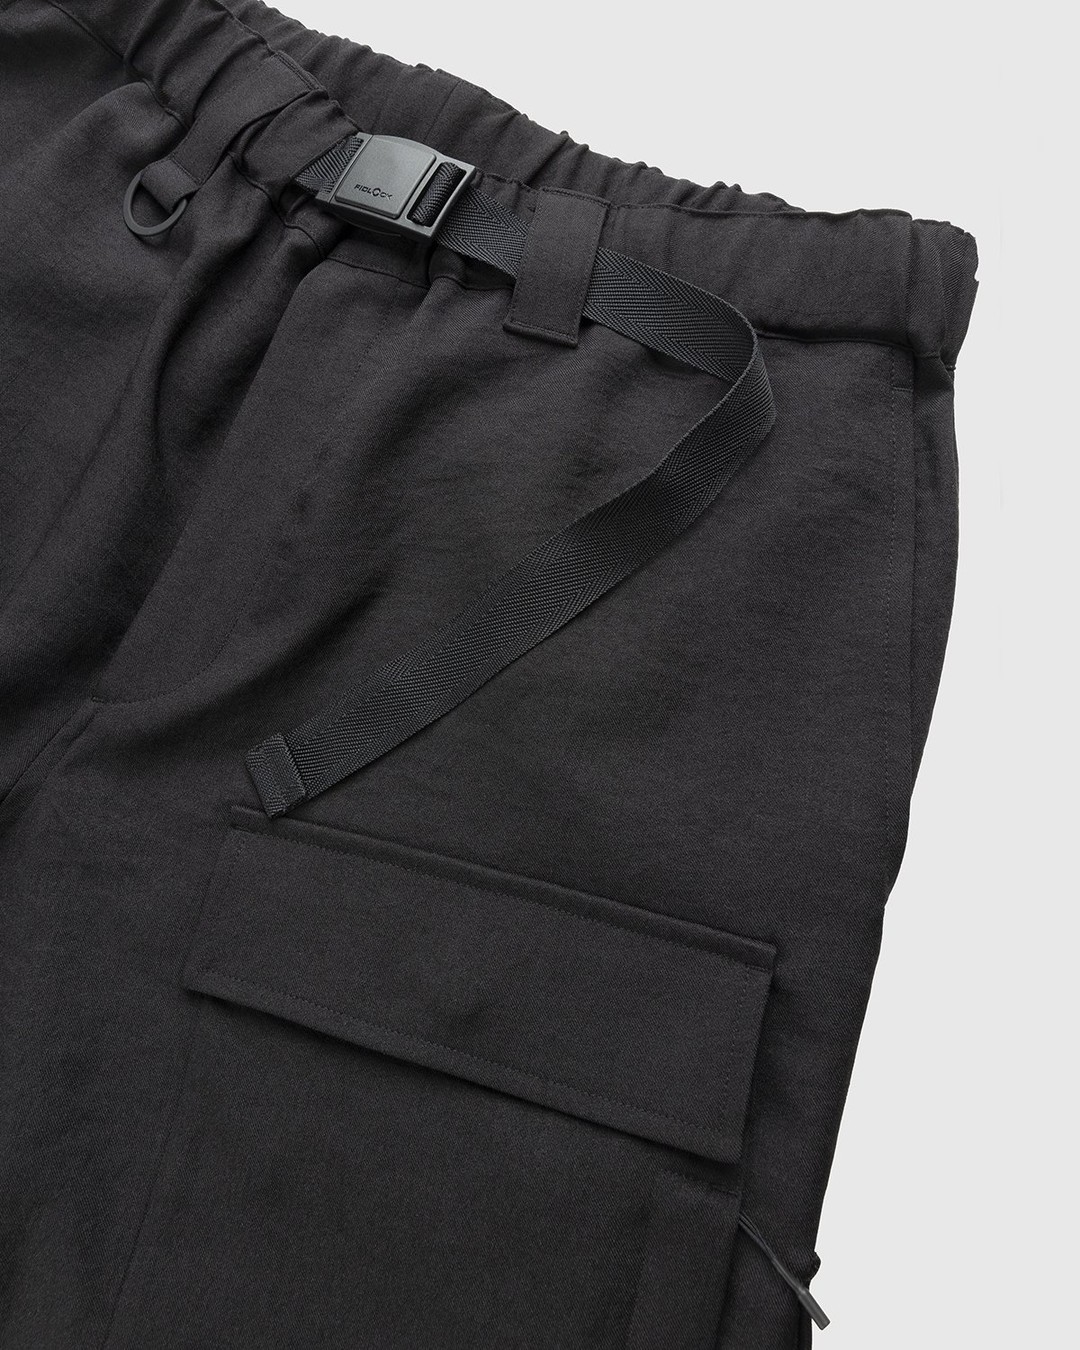 Y-3 – Classic Sport Uniform Cargo Pants Black - Pants - Black - Image 3